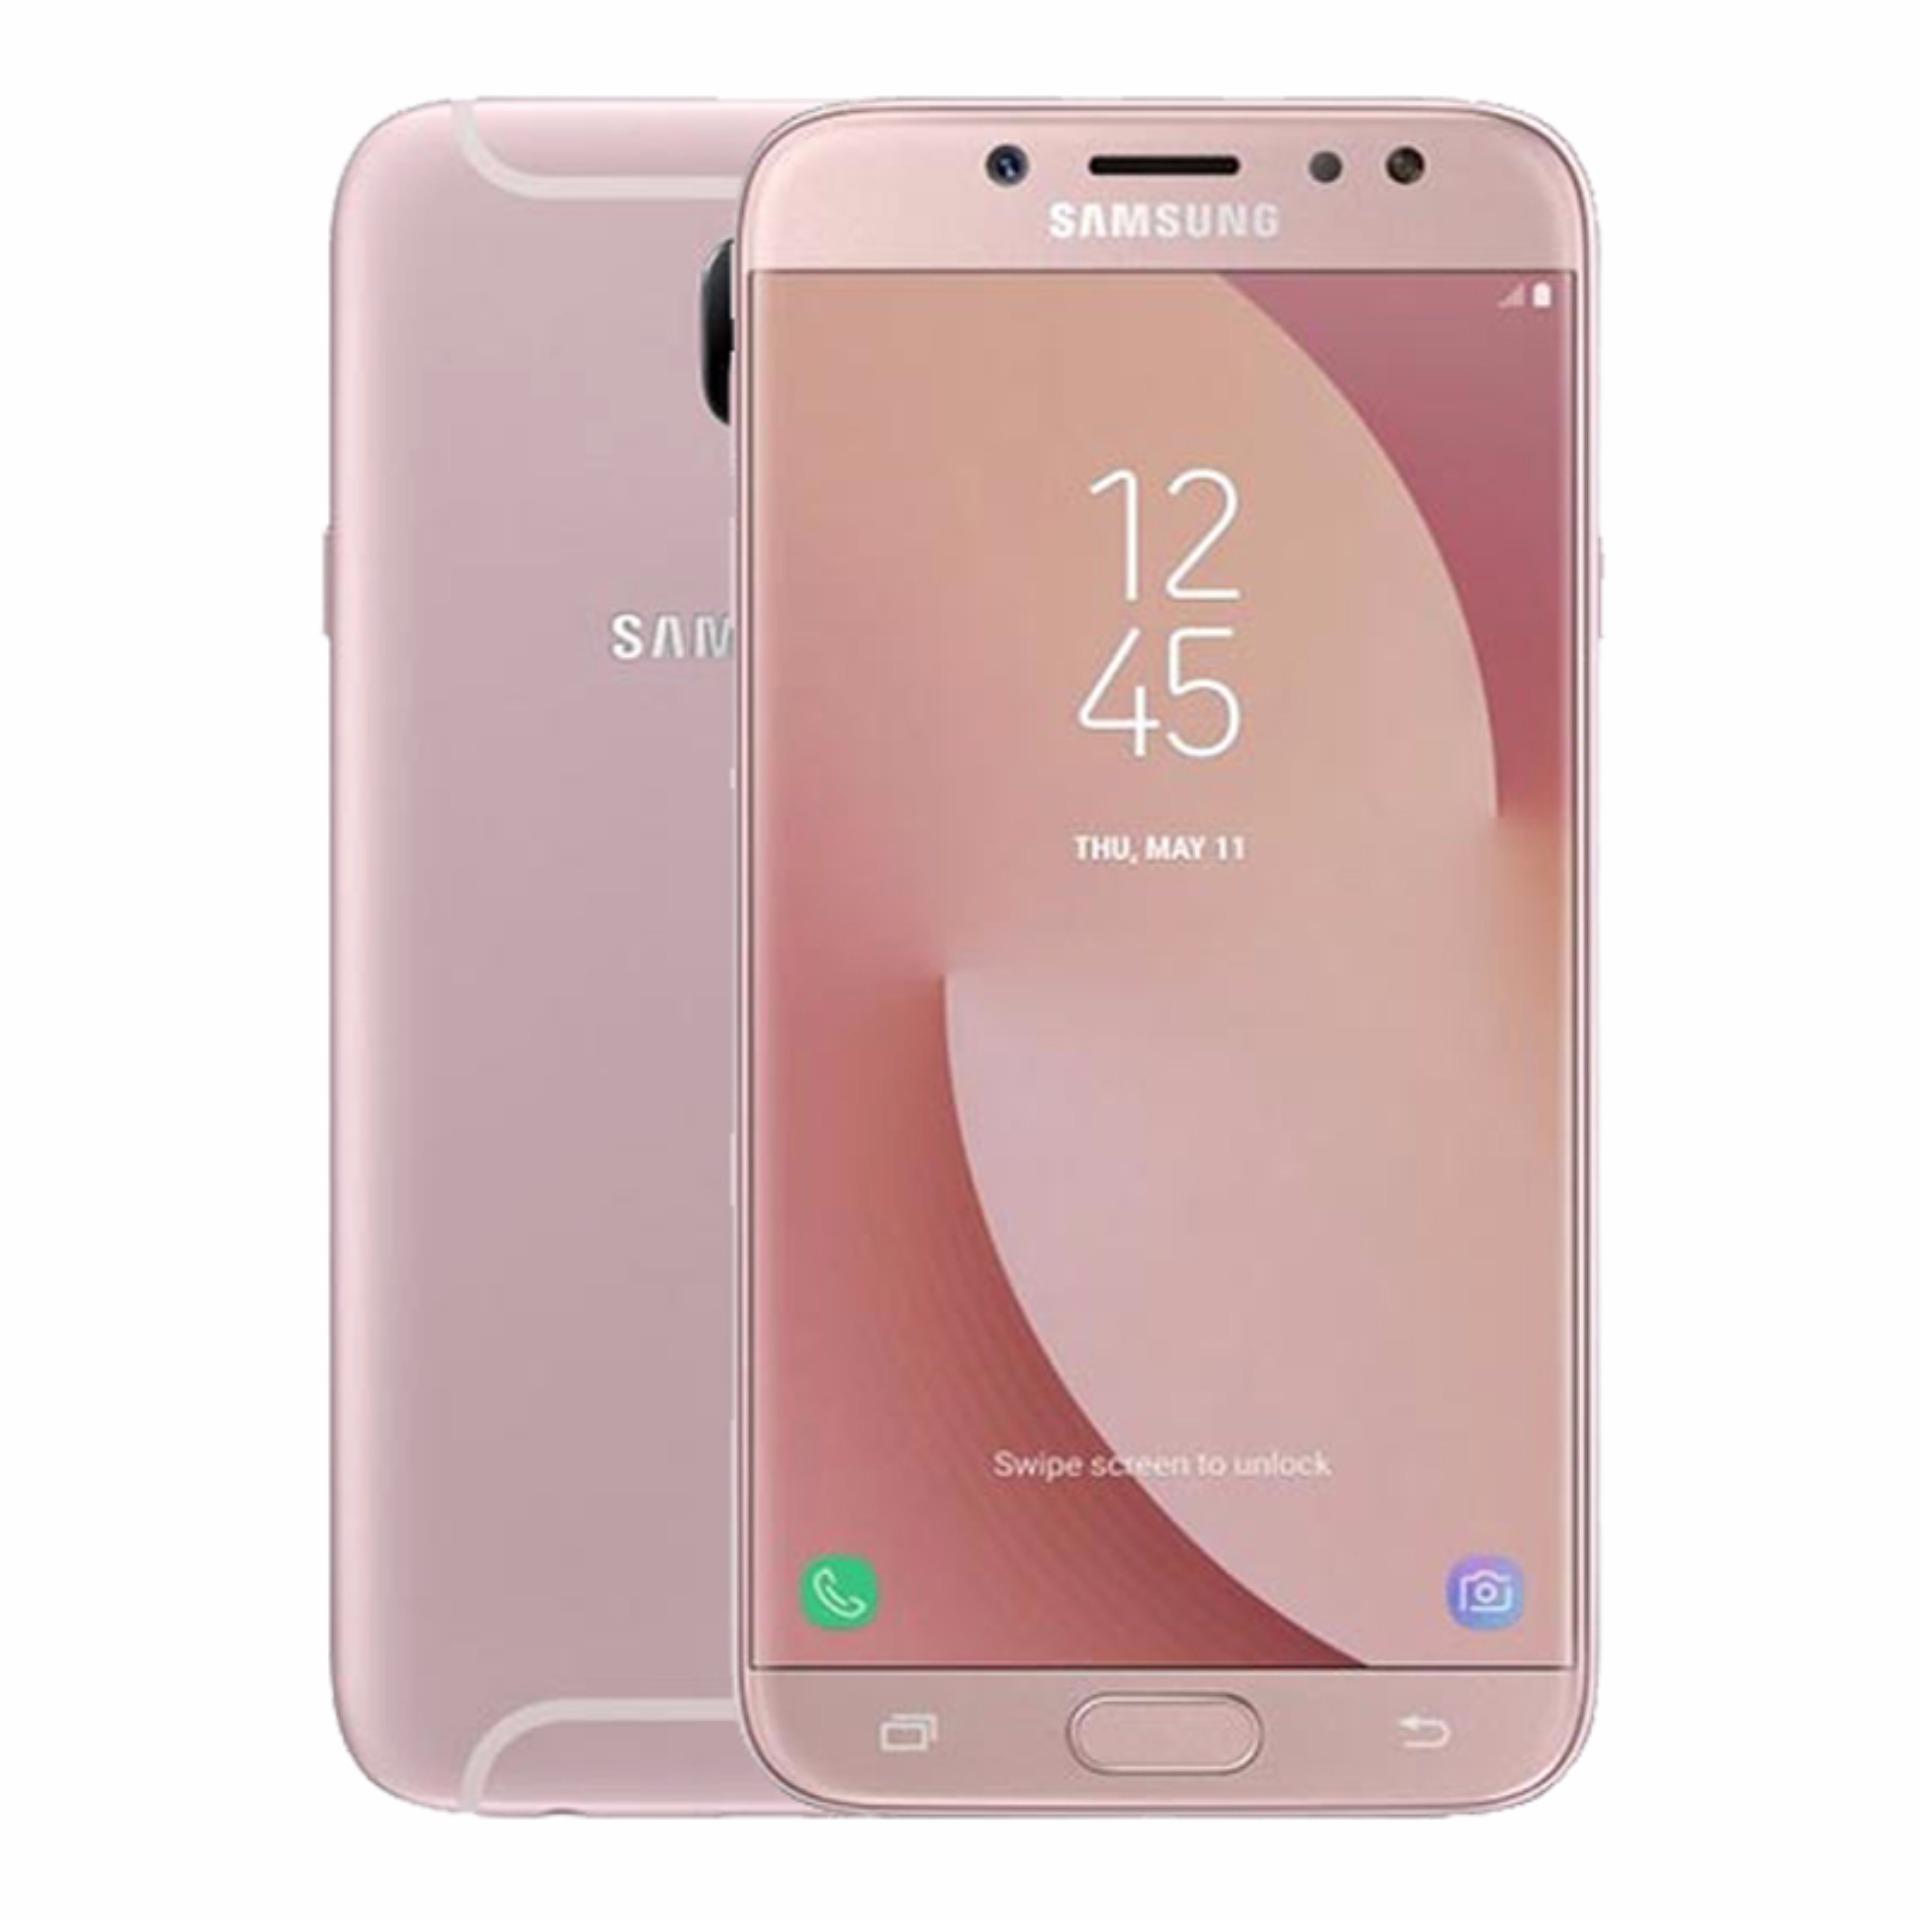 Samsung Galaxy J7 Pro 2017 32GB Ram 3GB (Hồng) - Hãng Phân phối chính thức